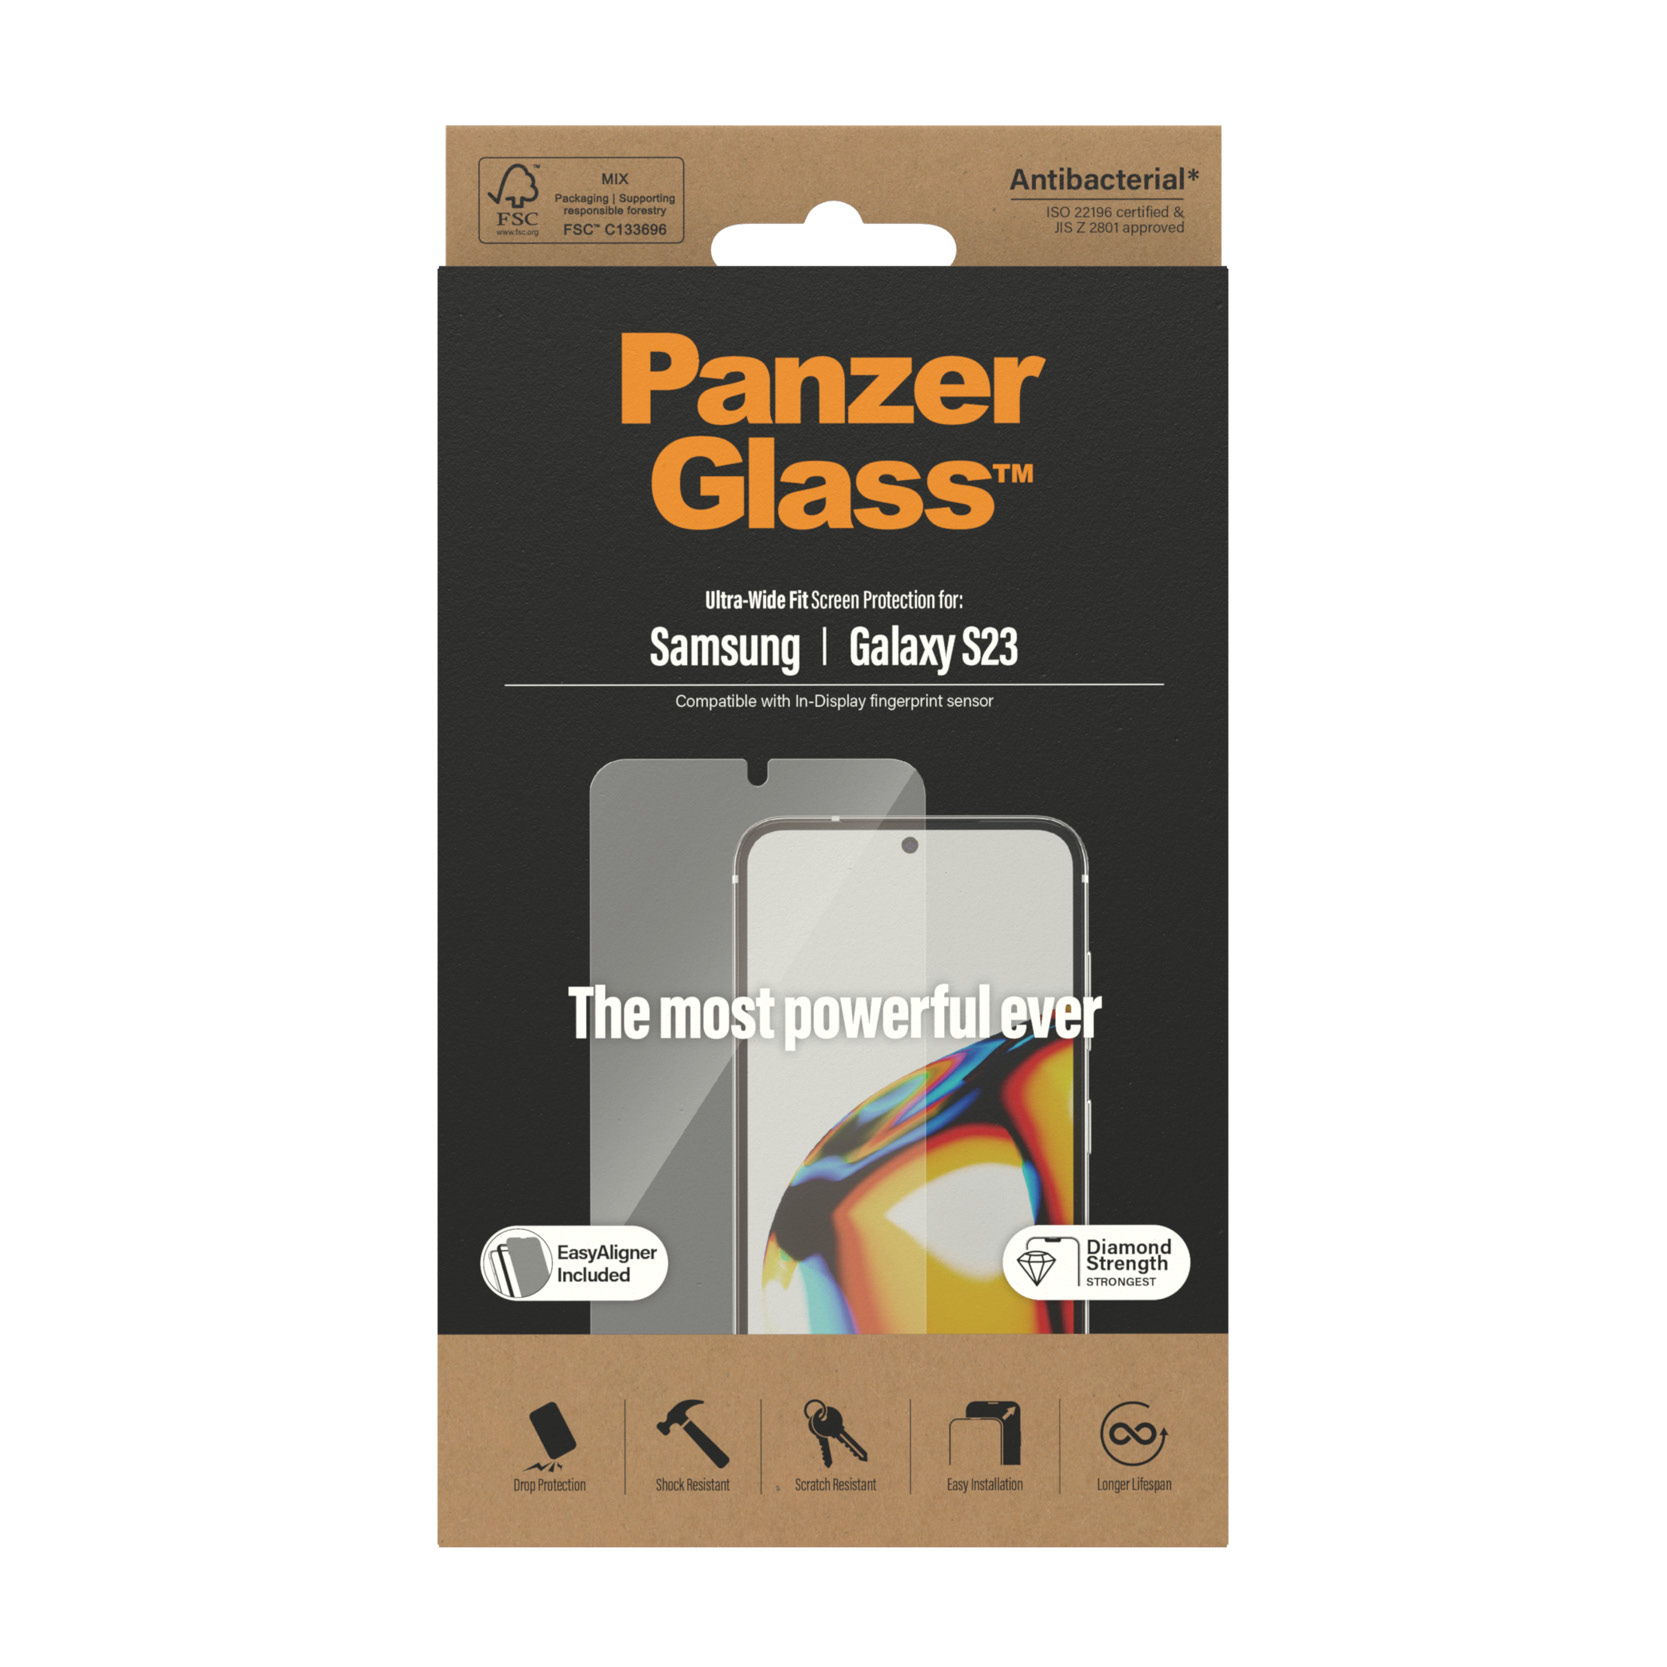 PanzerGlass szko hartowane Ultra-Wide Fit Samsung Galaxy S23